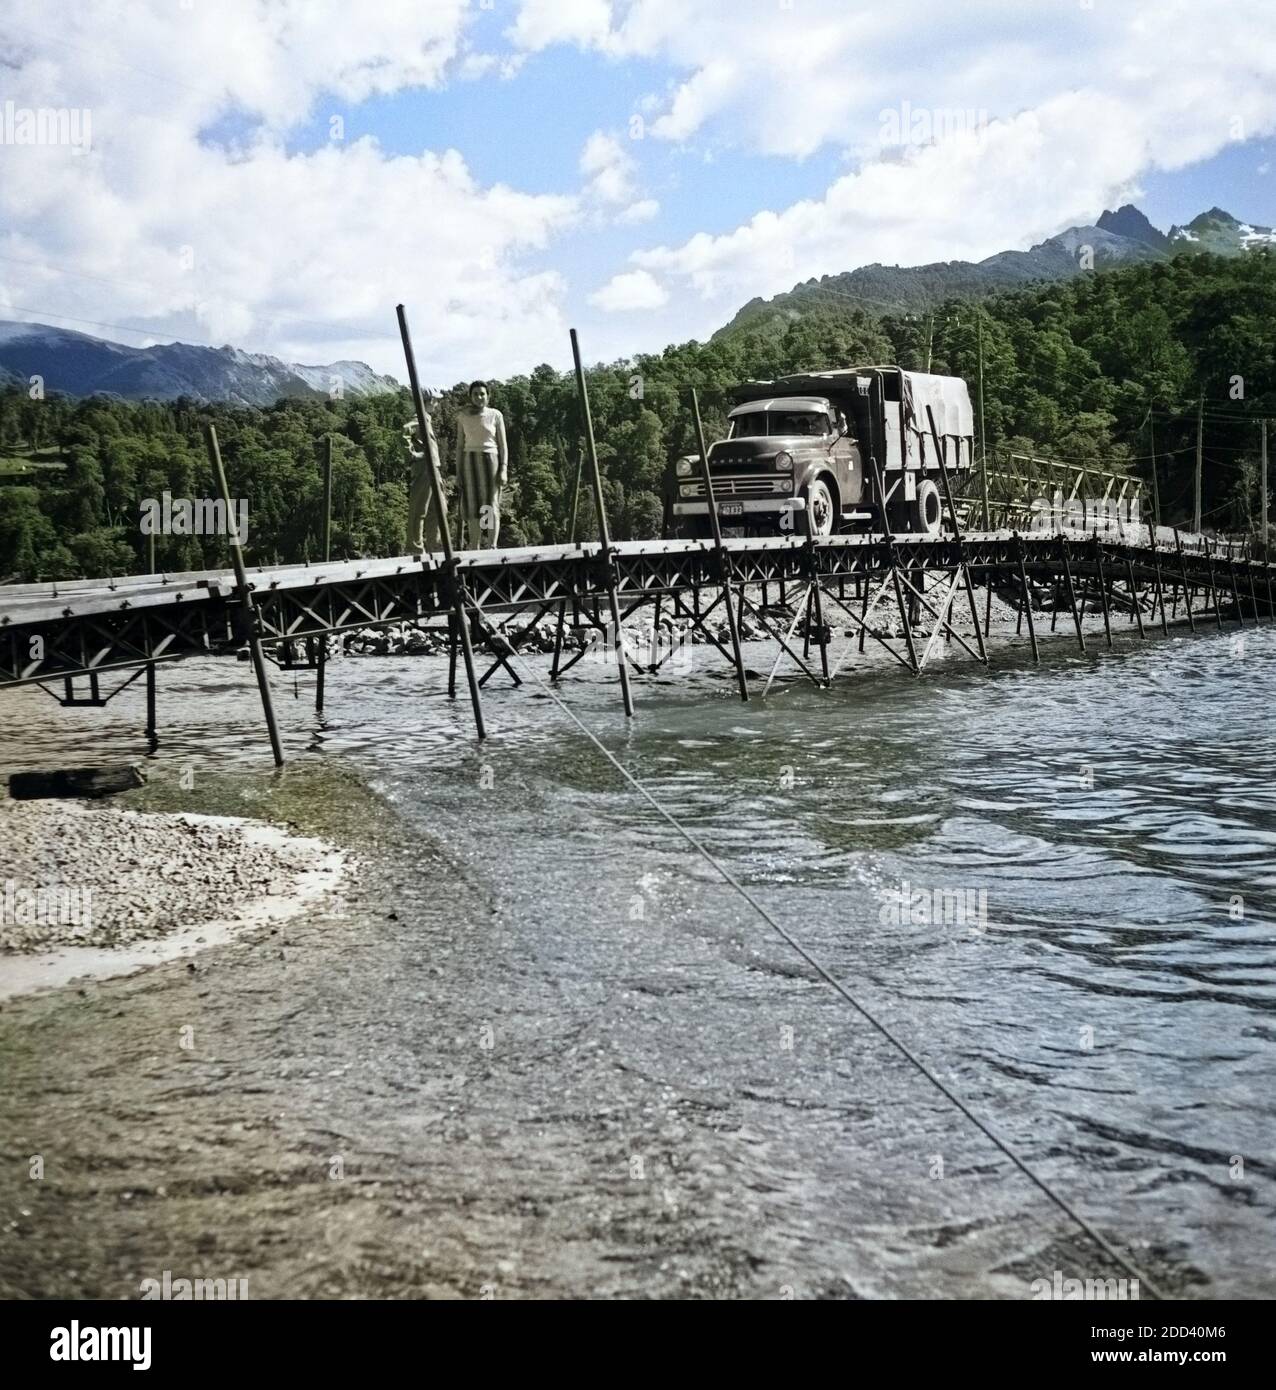 Ein Lastwagen auf einer Brücke über eine Furt des Lago Loloc nahe der Stadt Mendoza in Argentinien, 1957. A lorry crossing a bridge over Lago Loloc lake near the city of Mendoza, Argentina 1957. Stock Photo